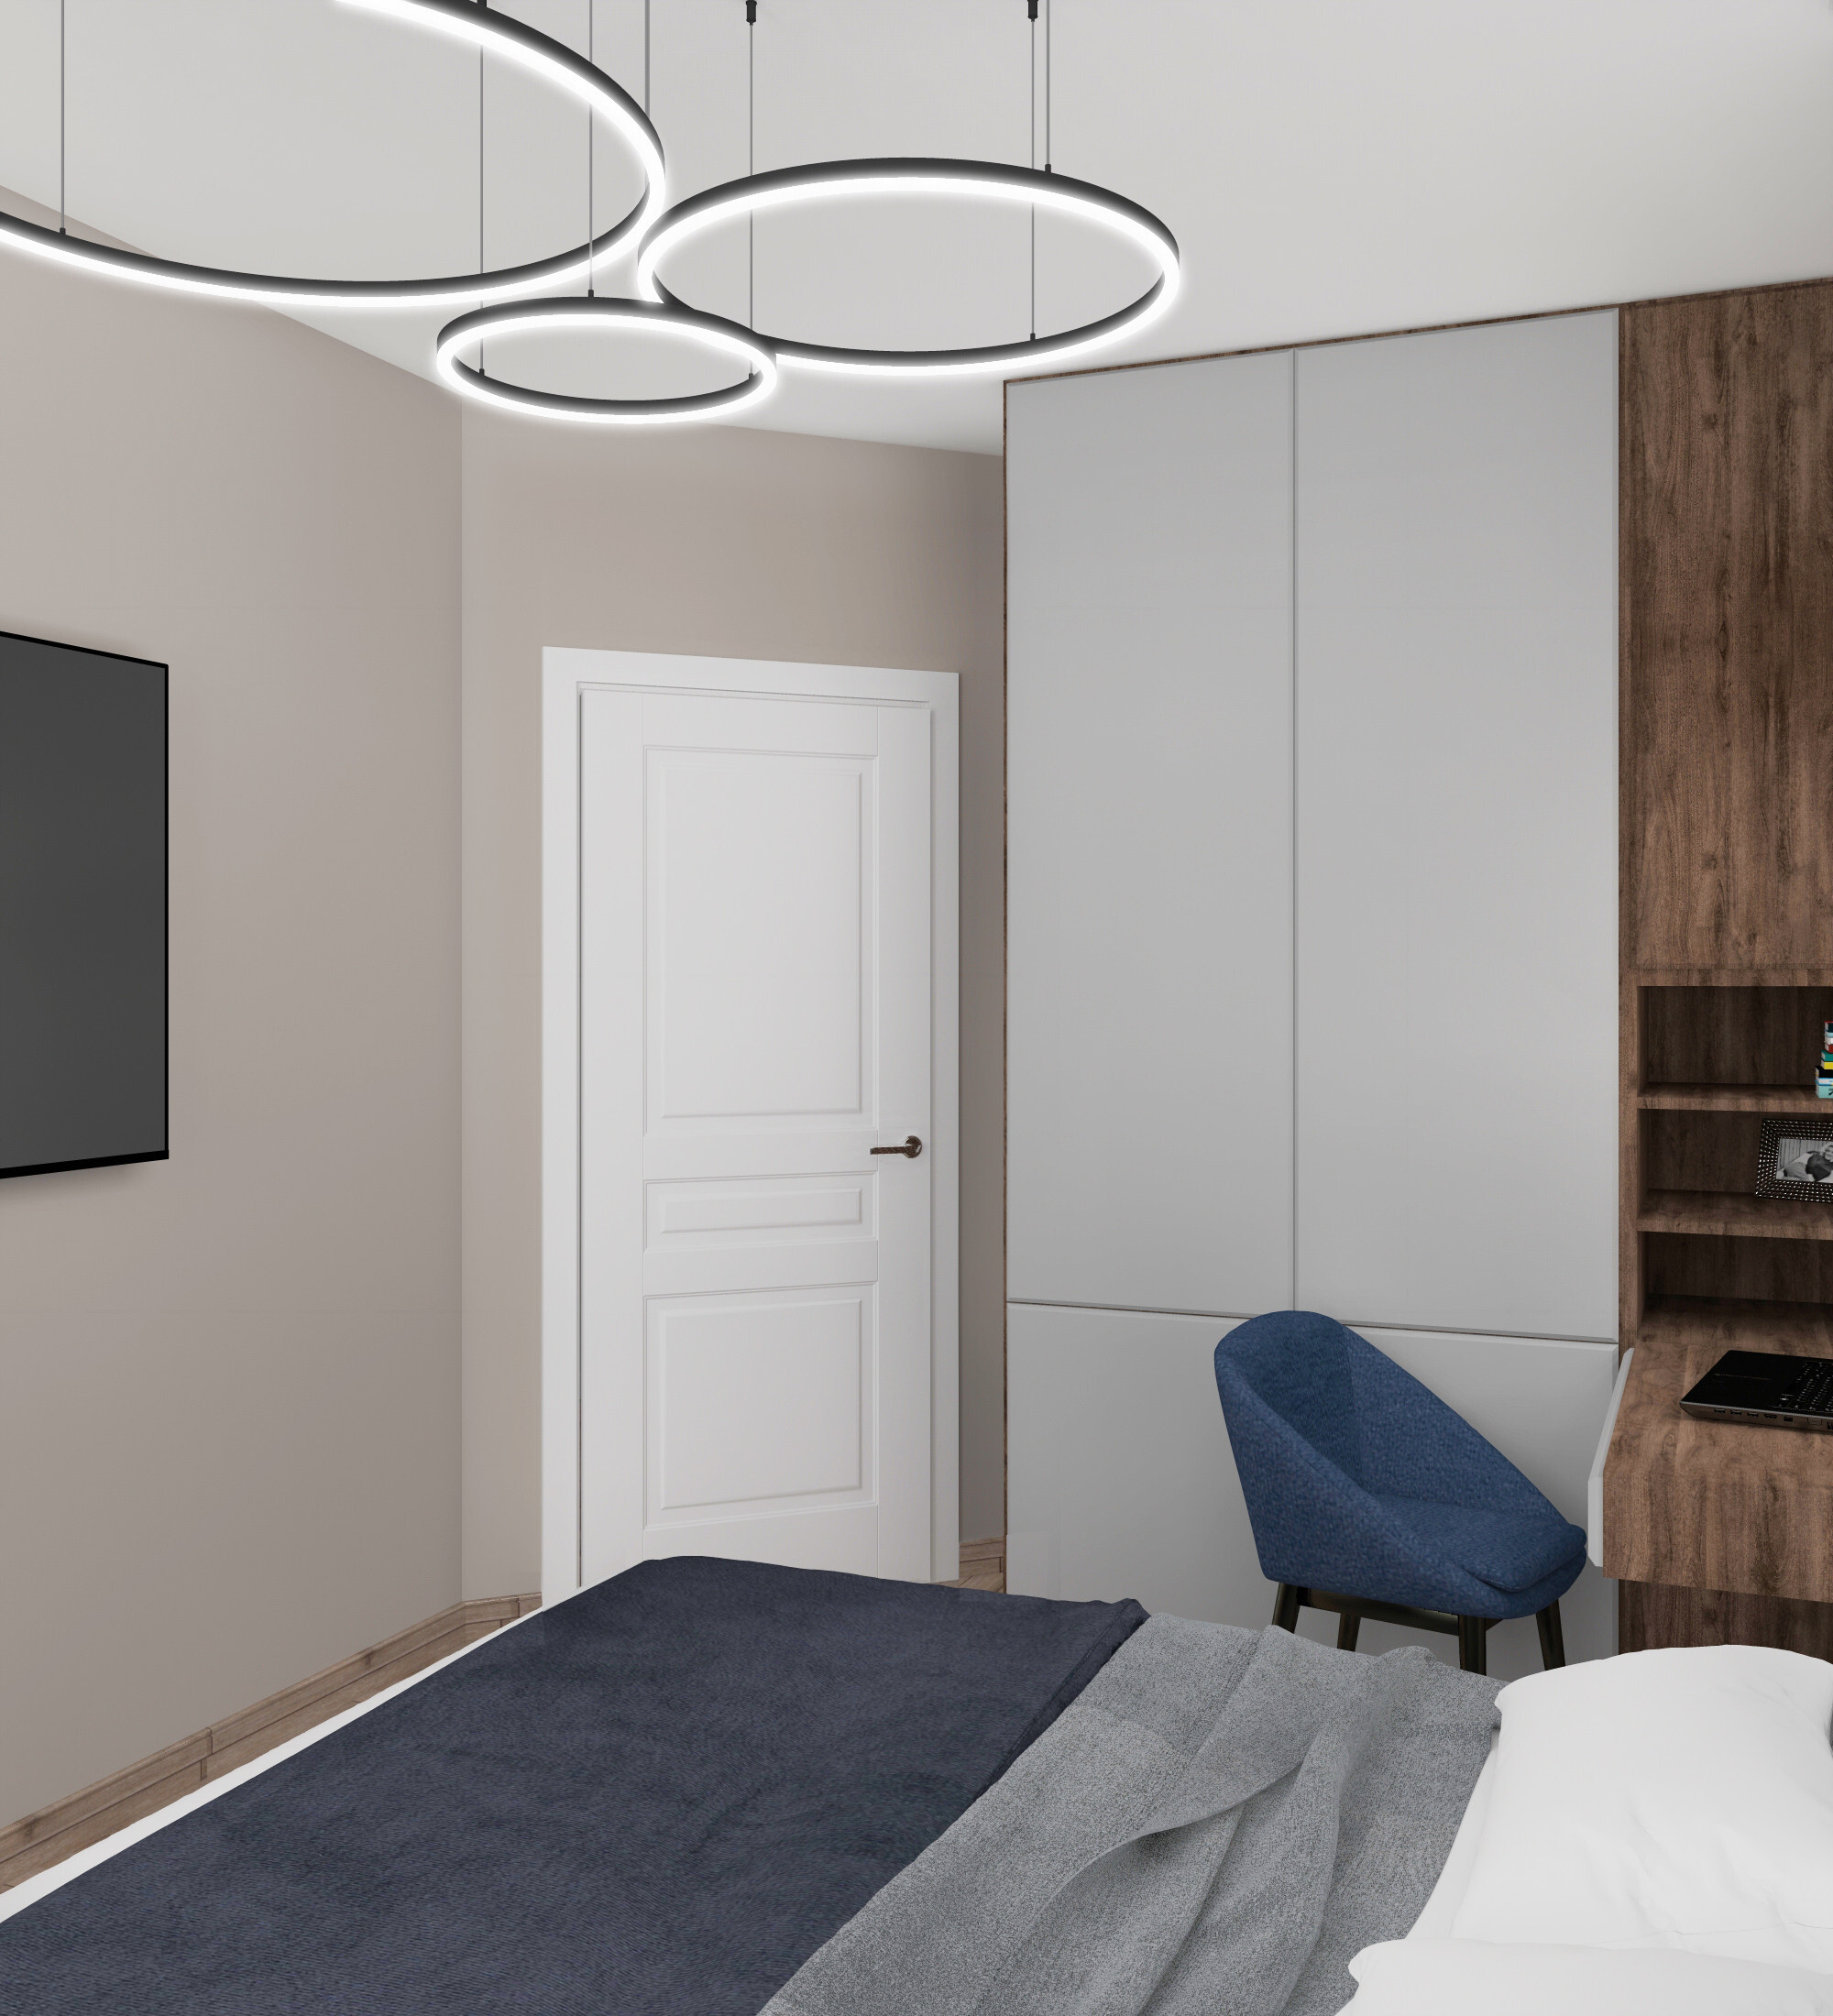 Интерьер спальни c рабочим местом, световыми линиями, подсветкой светодиодной и светильниками над кроватью